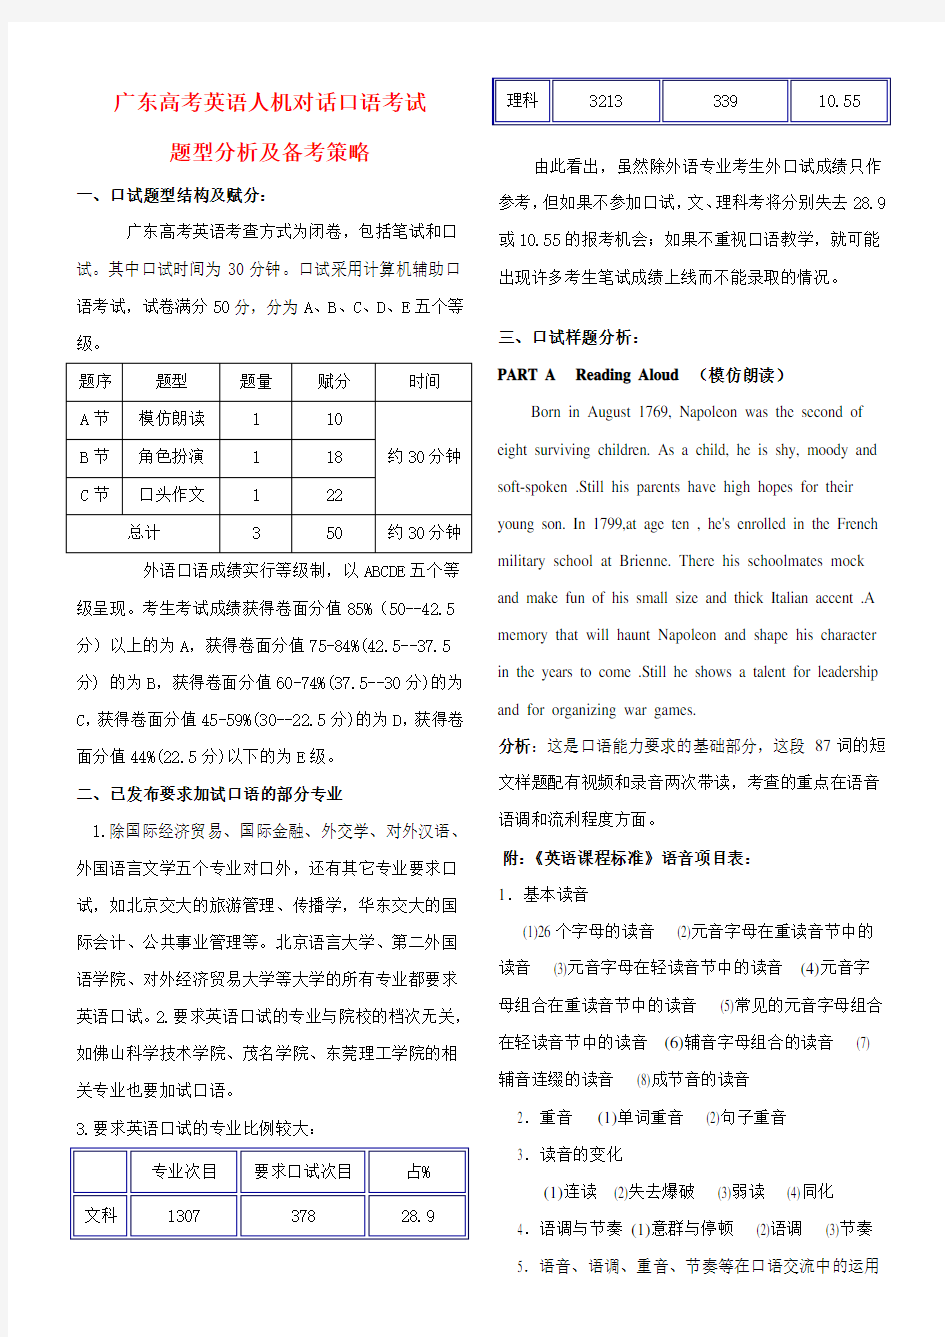 广东高考英语人机对话口语考试题型分析及备考策略